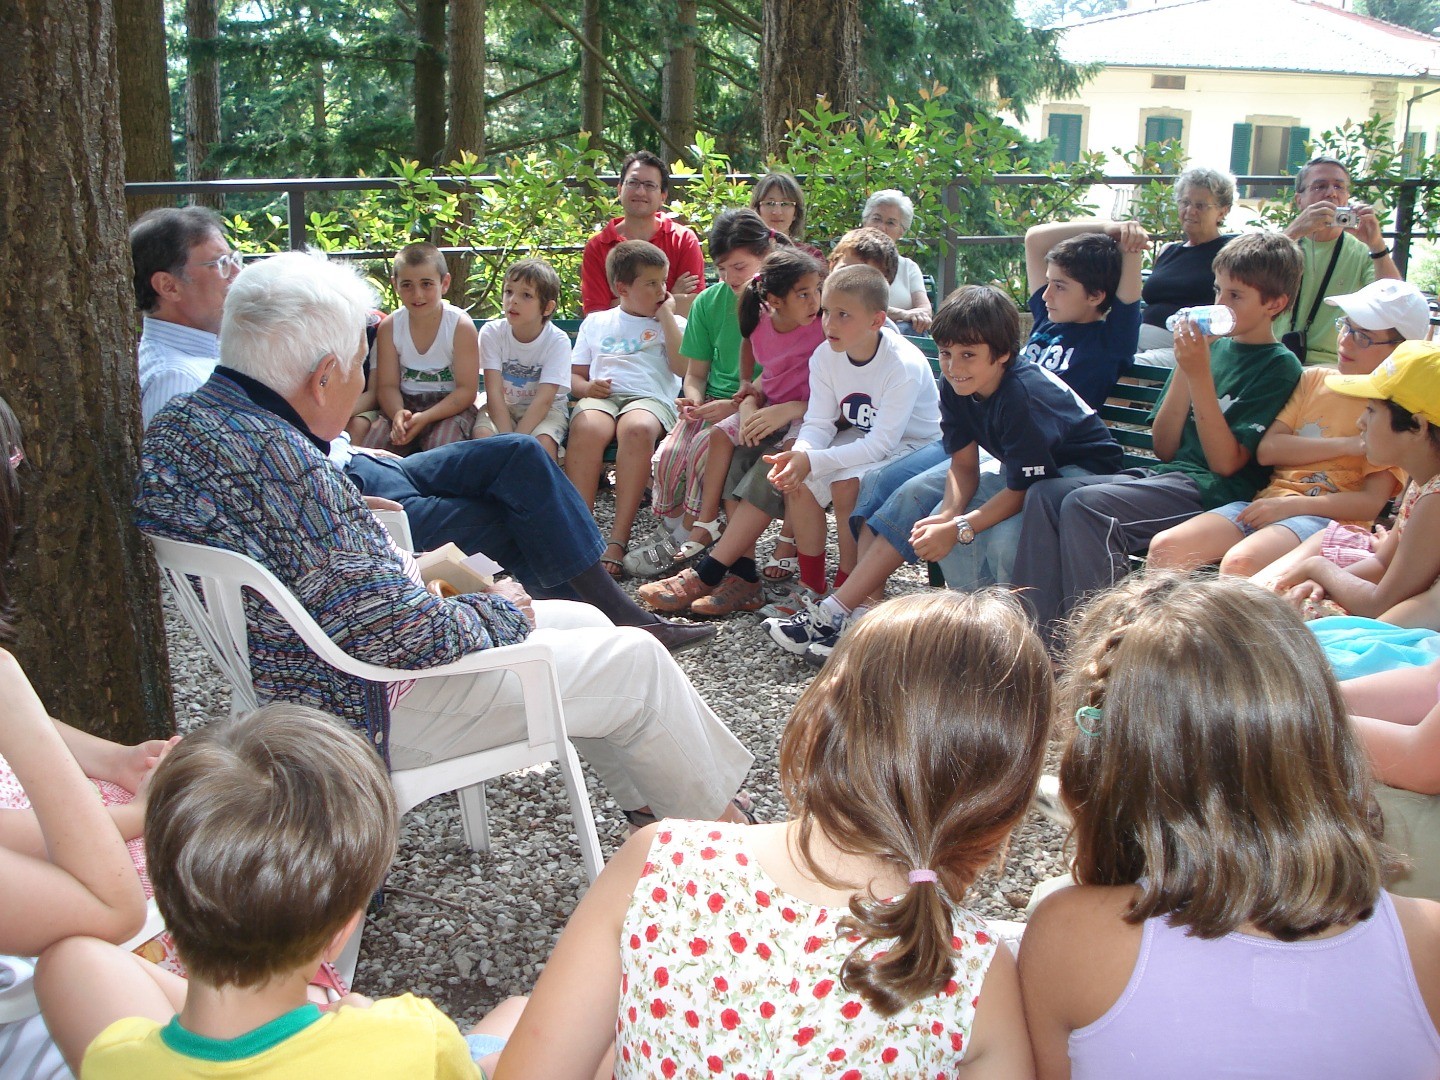 2008, Monte Senario, Firenze - Arturo Paoli con i bambini dell'incontro organizzato dall'associazione Ore undici